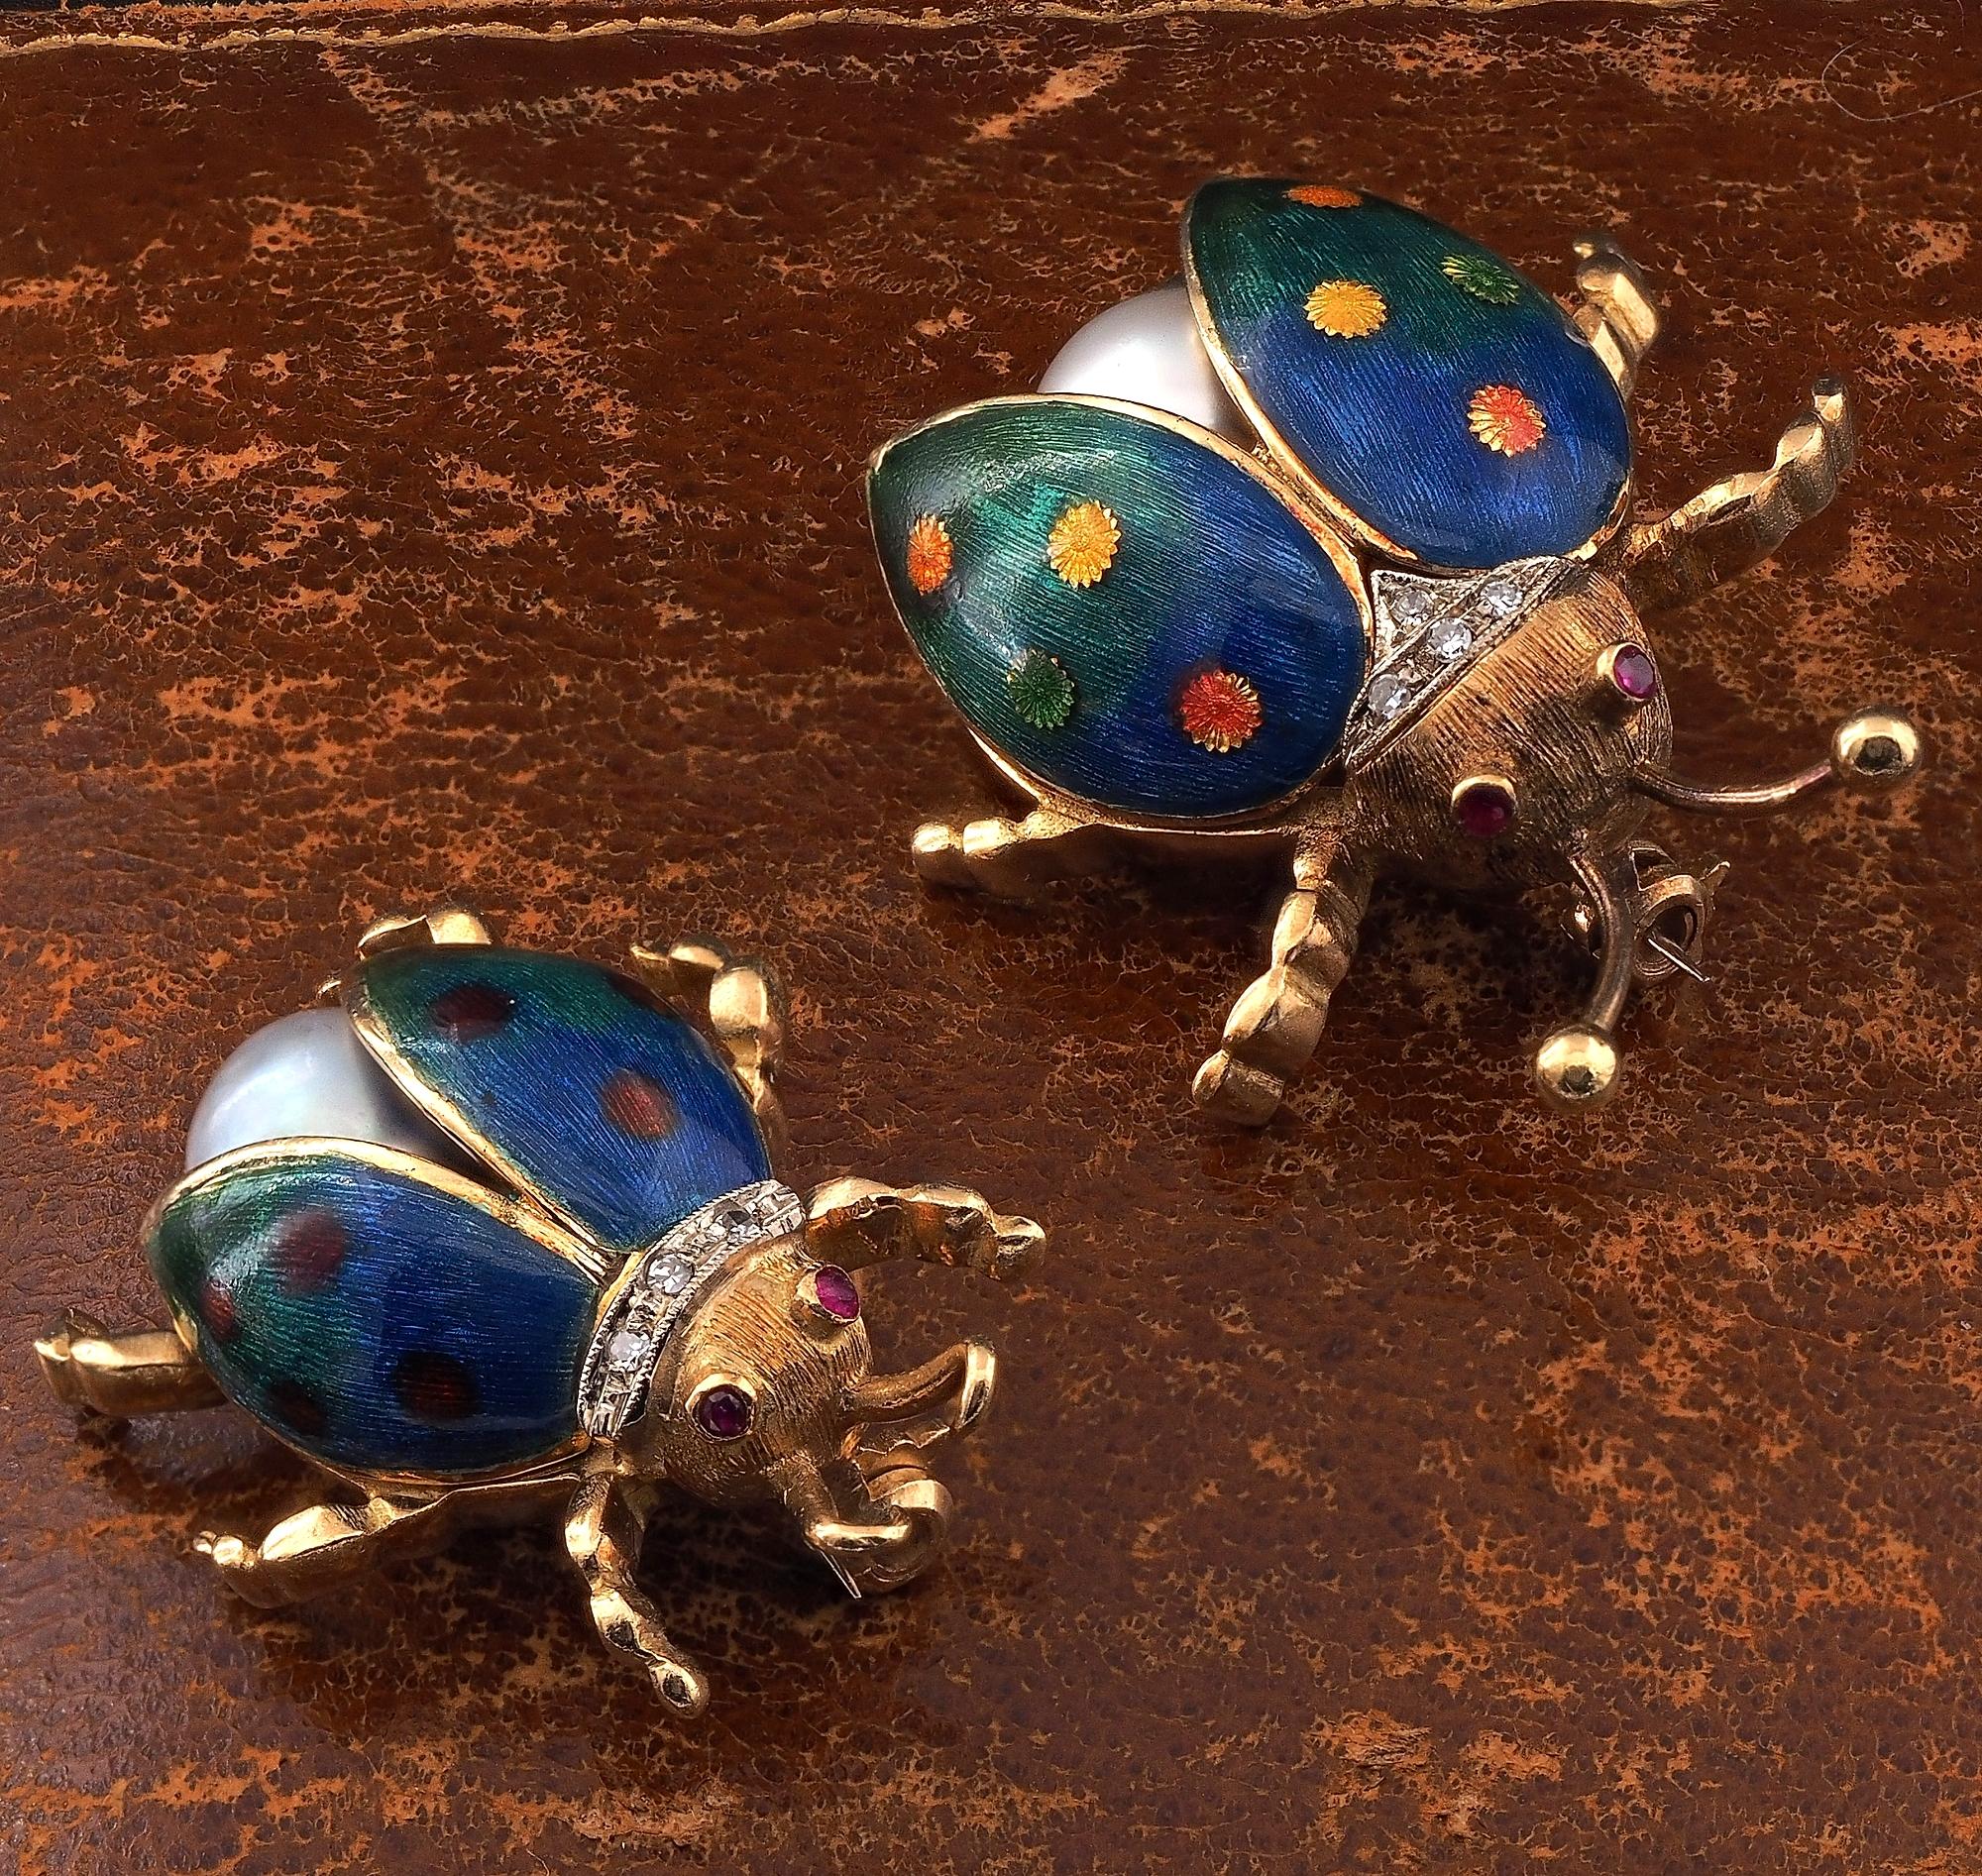 La coccinelle sucrée
Emblème de la chance, ces petites créatures volantes fantaisistes ont inspiré les maîtres joailliers de Cartier à tous les grands fabricants de bijoux, un insecte porte-bonheur d'une beauté intemporelle.
Ces broches vintage sont